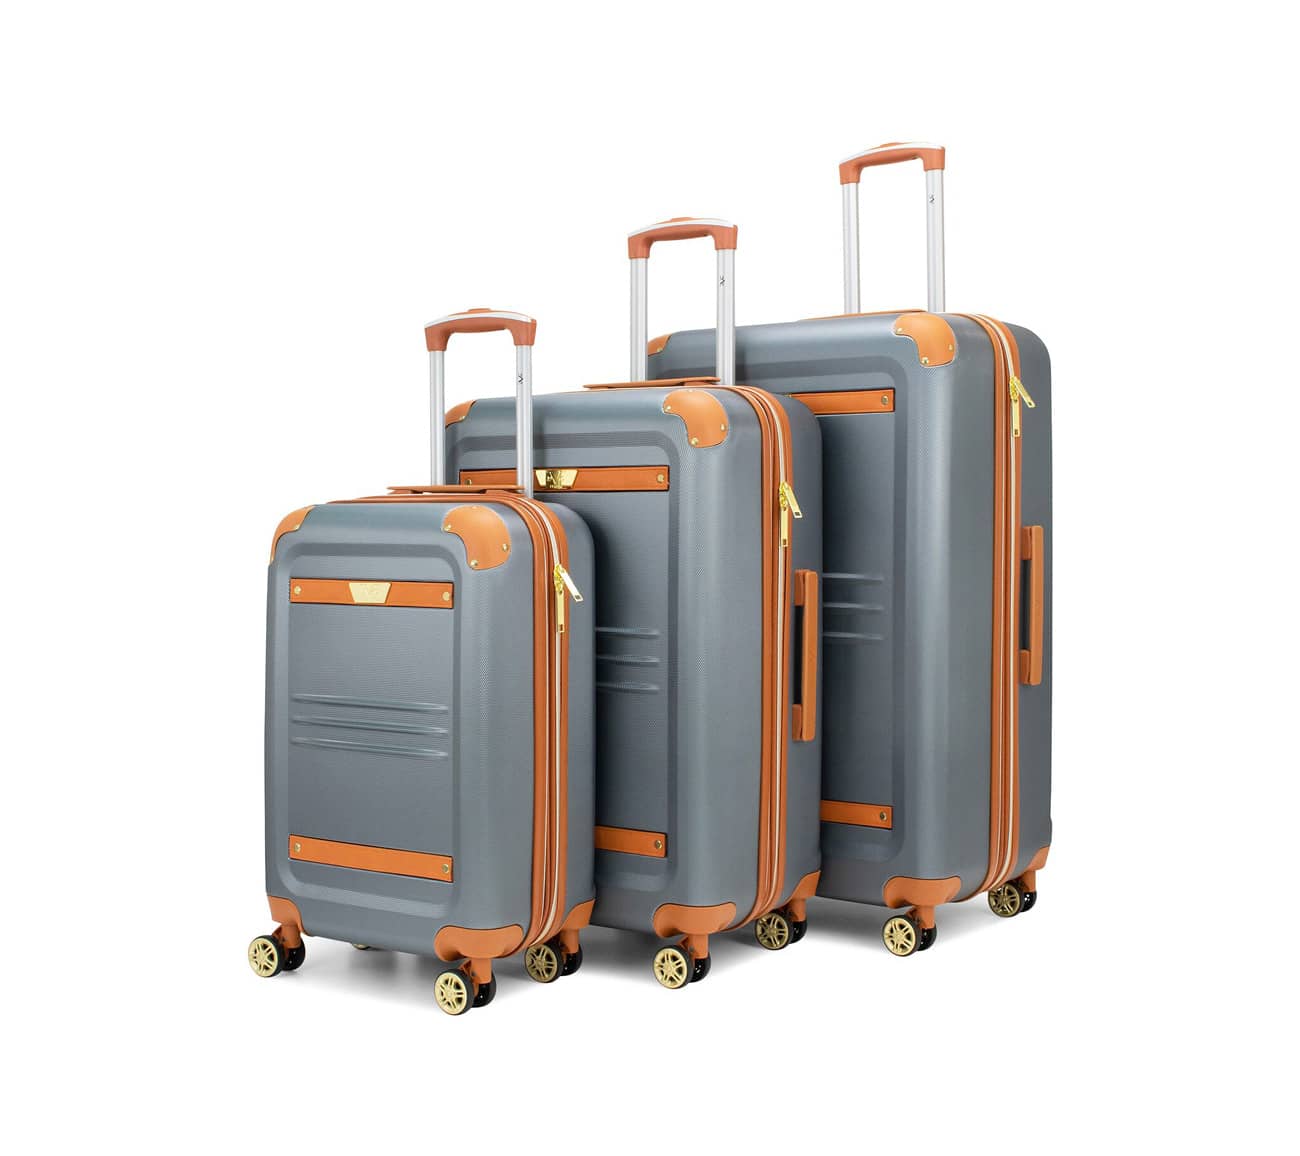 Luxury designer luggage set